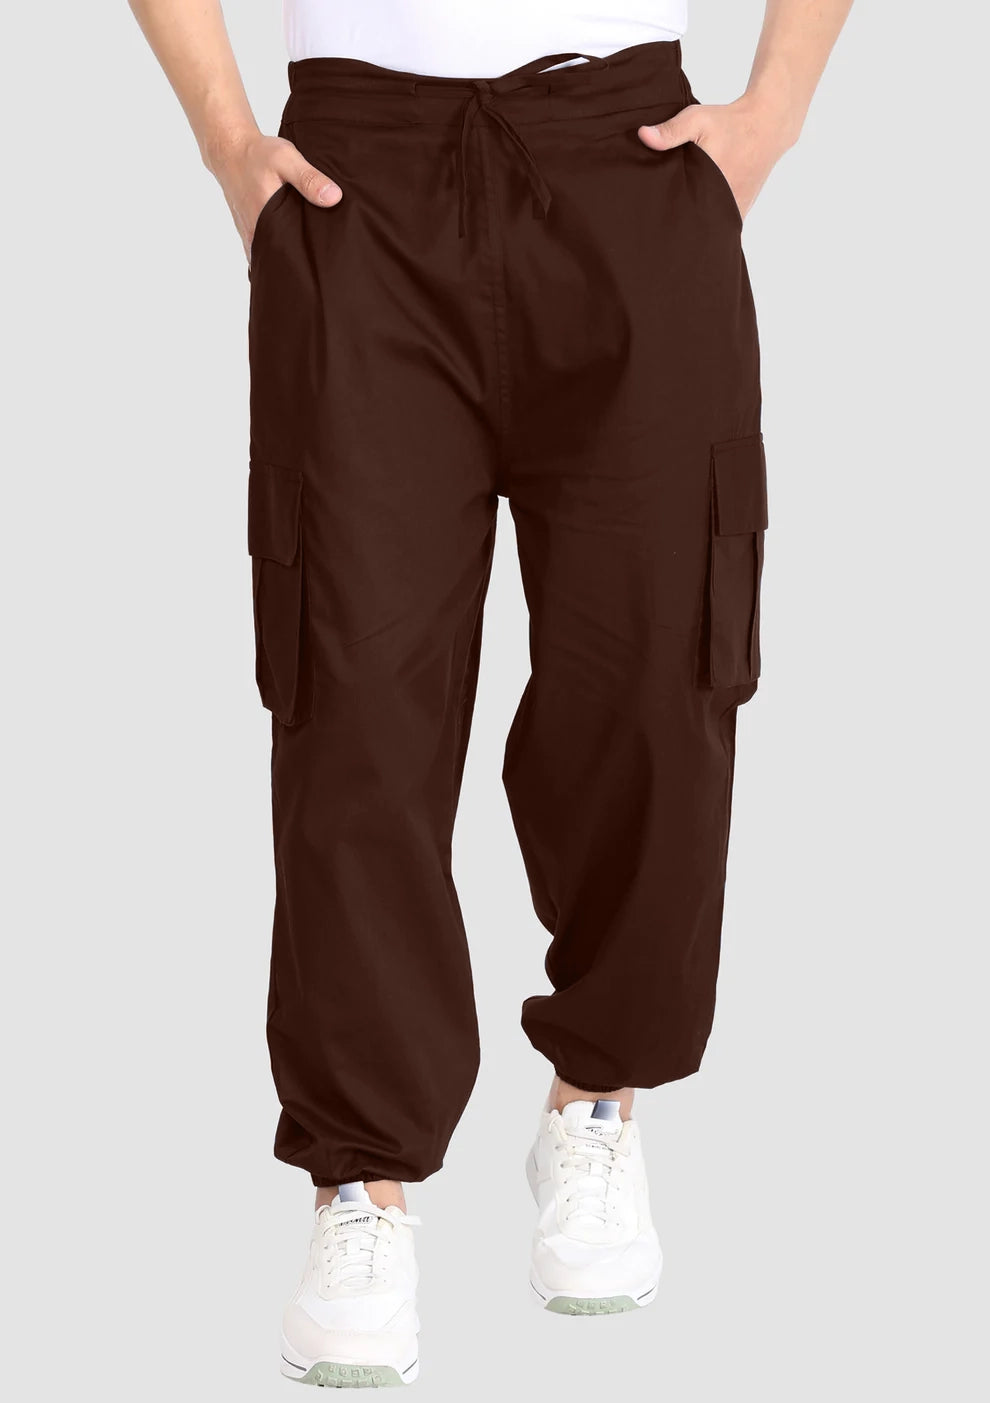 Men039s Corduroy Baggy Trousers Loose Wide Leg Plain Color Pants Retro  Style New  eBay